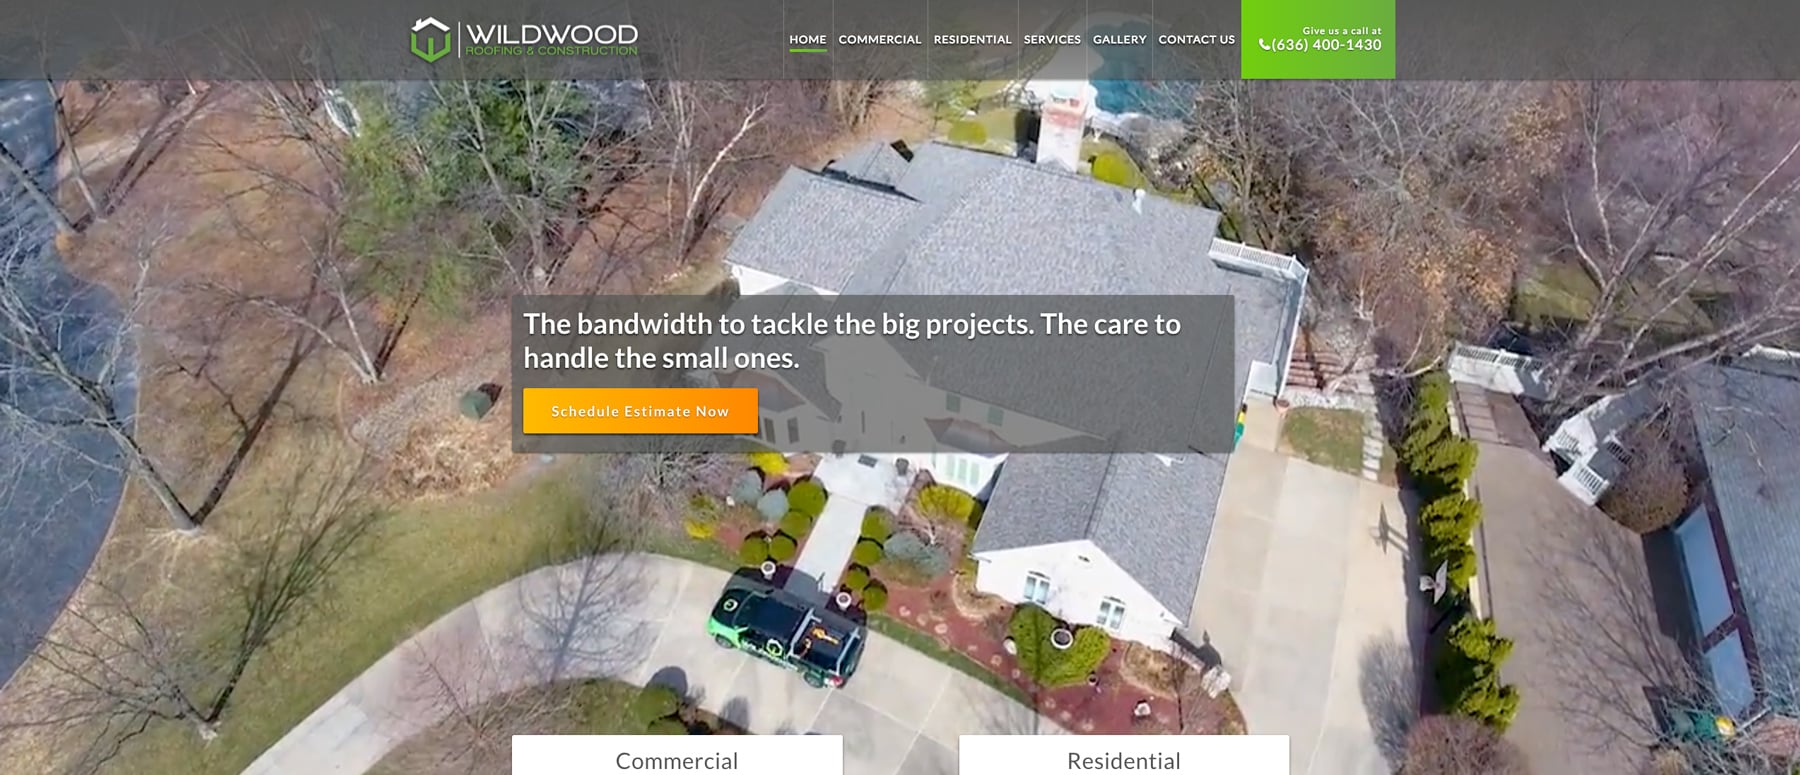 Wildwood Roofing homepage